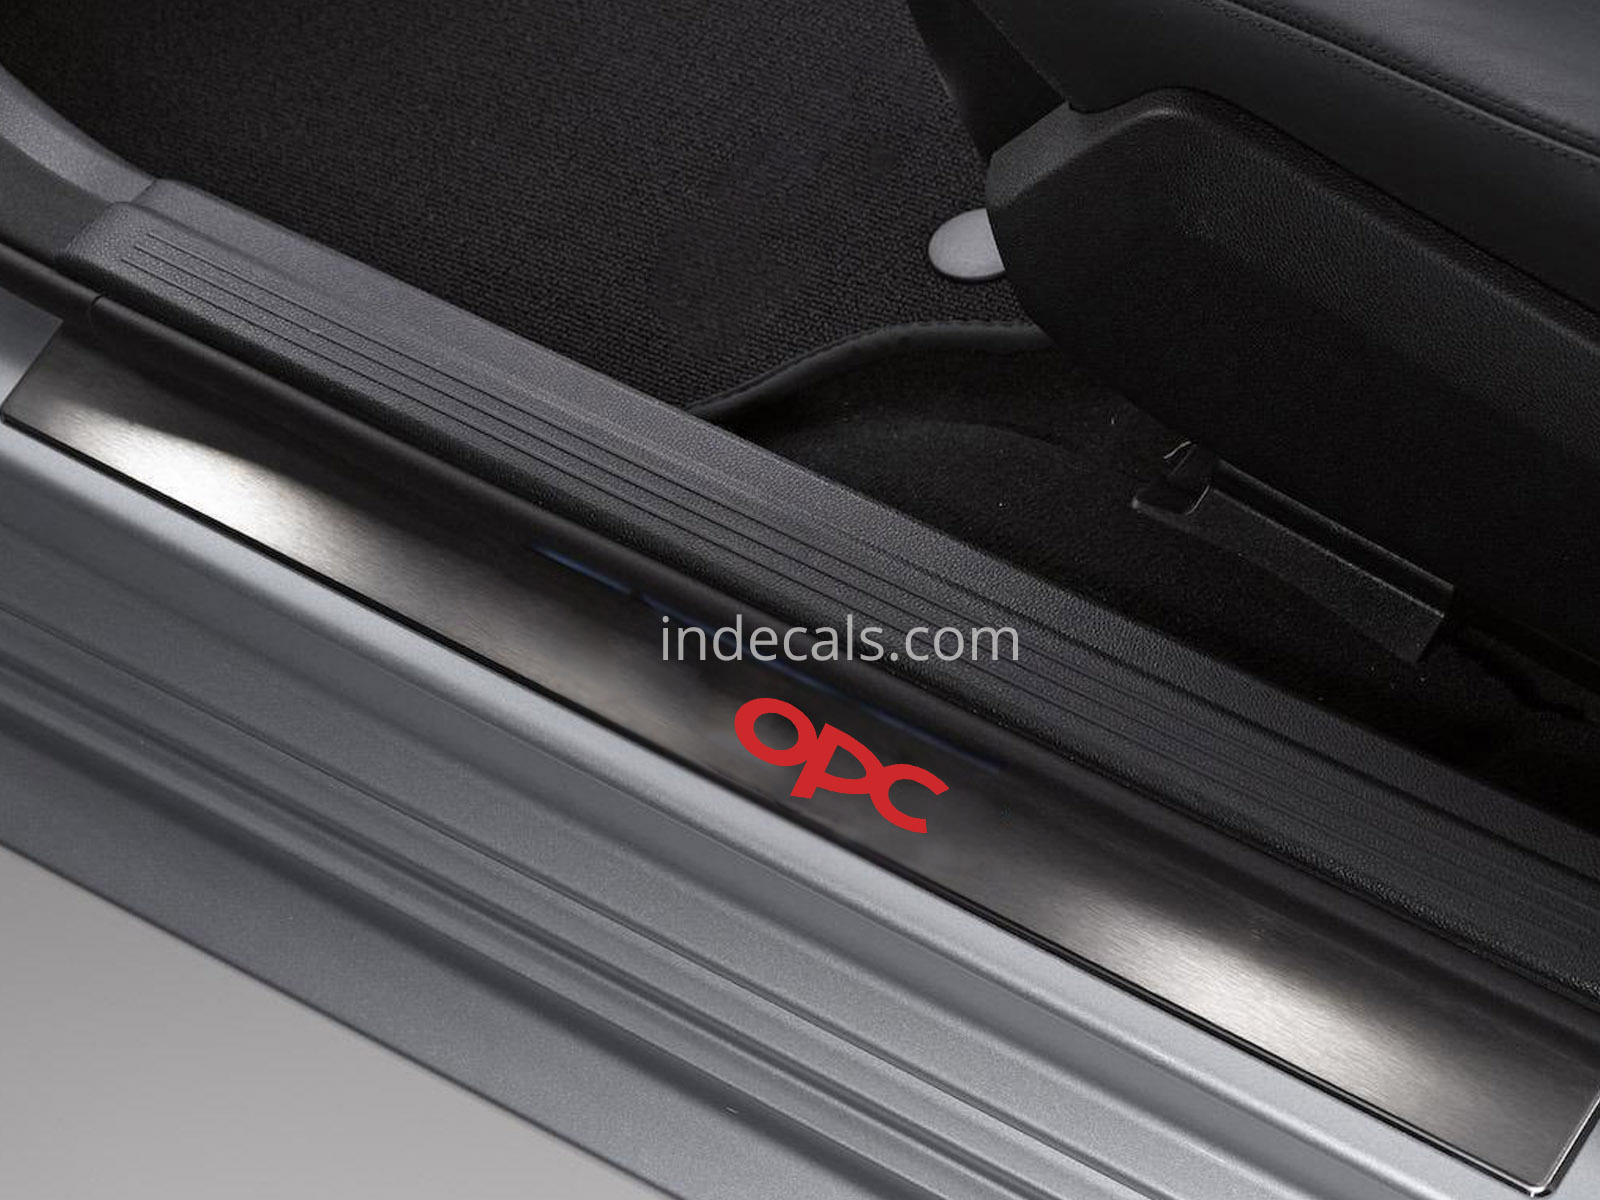 6 x Opel OPC Stickers for Door Sills - Red